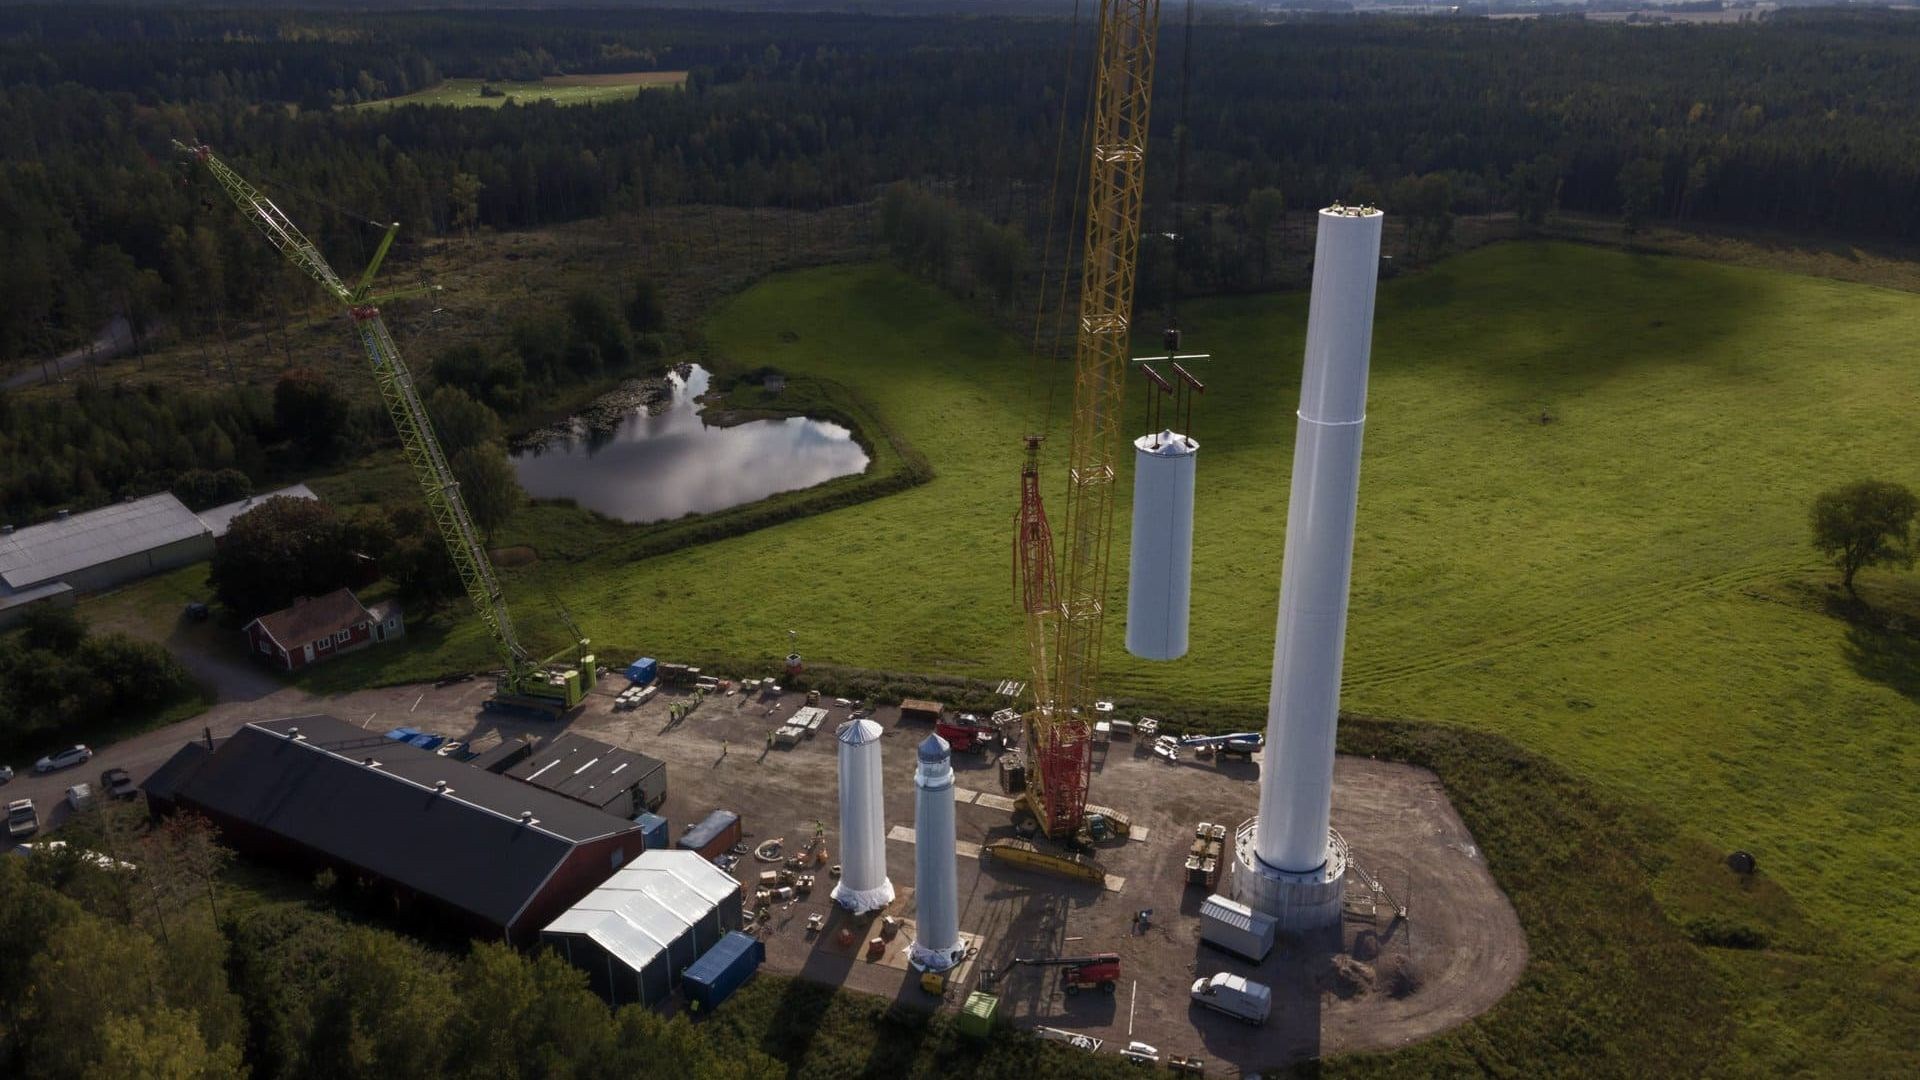 İsveç'de dünyanın en uzun ahşap kuleli rüzgar türbini inşa edildi